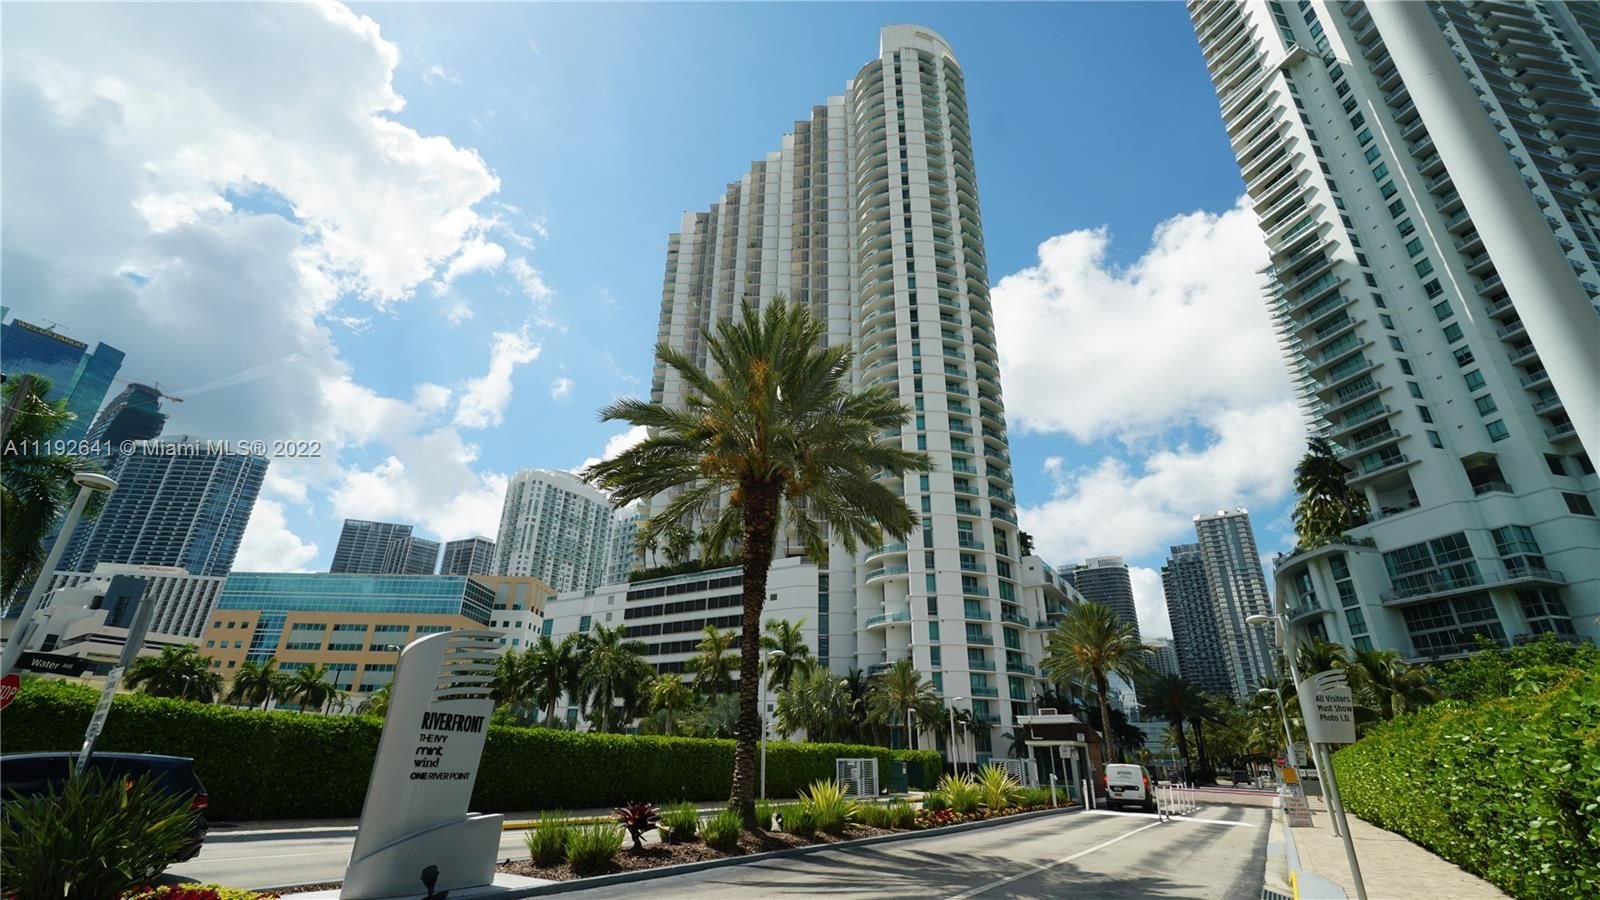 Real estate property located at 350 Miami Ave #4011, Miami-Dade County, Miami, FL